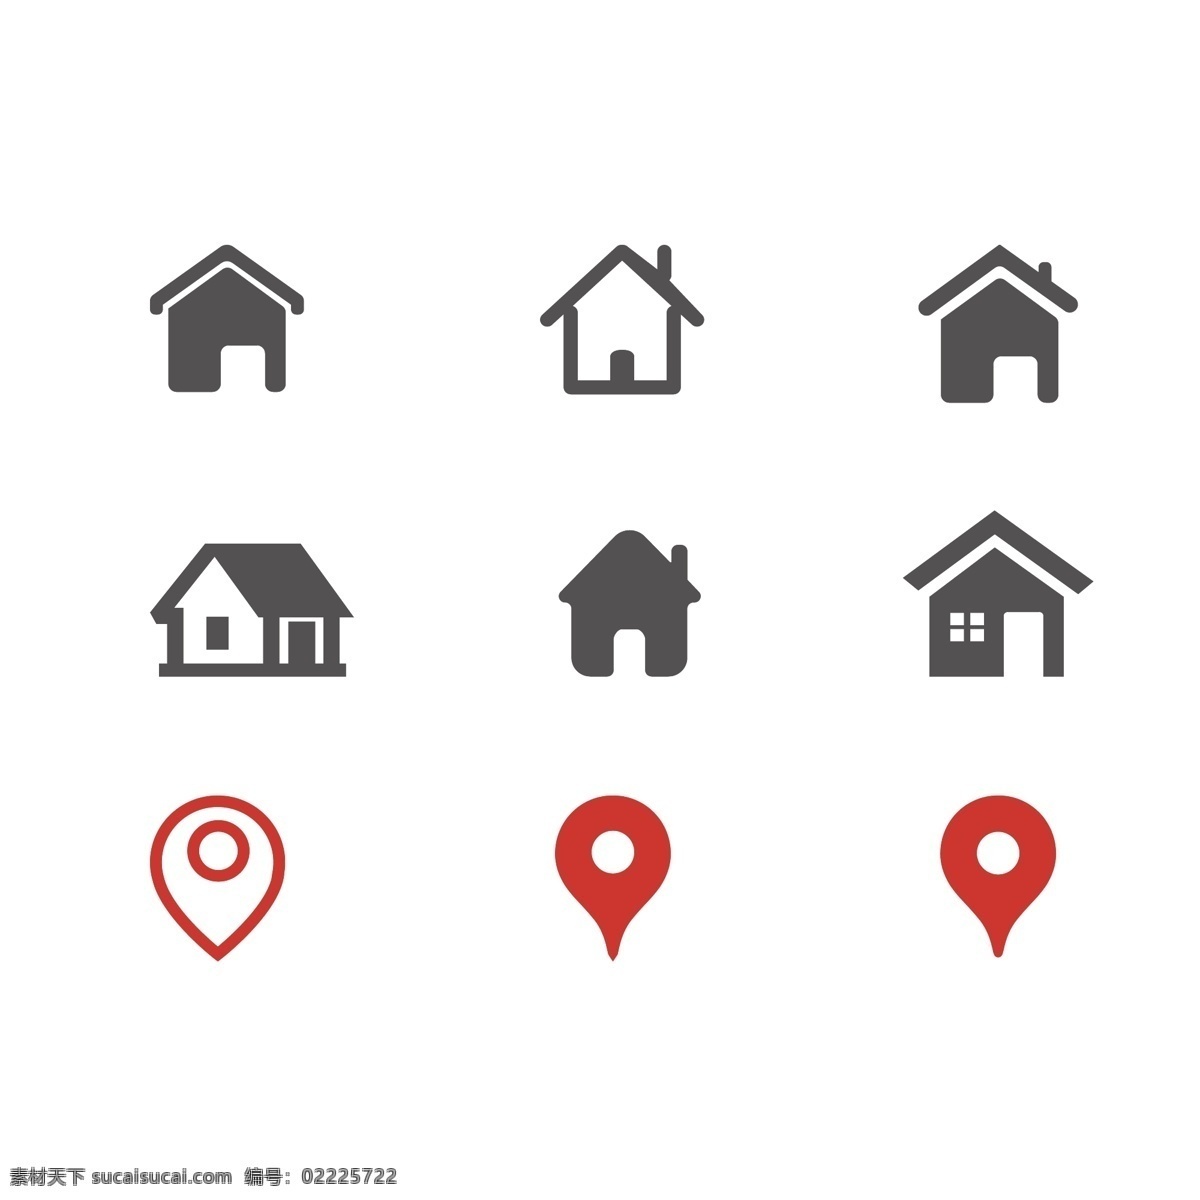 地址 地点 目的地 地位 位置 名片图标 名片小图标 常用图标 常用名片图标 实用图标 节能 环保 家园 小房子 home 标志图标 其他图标